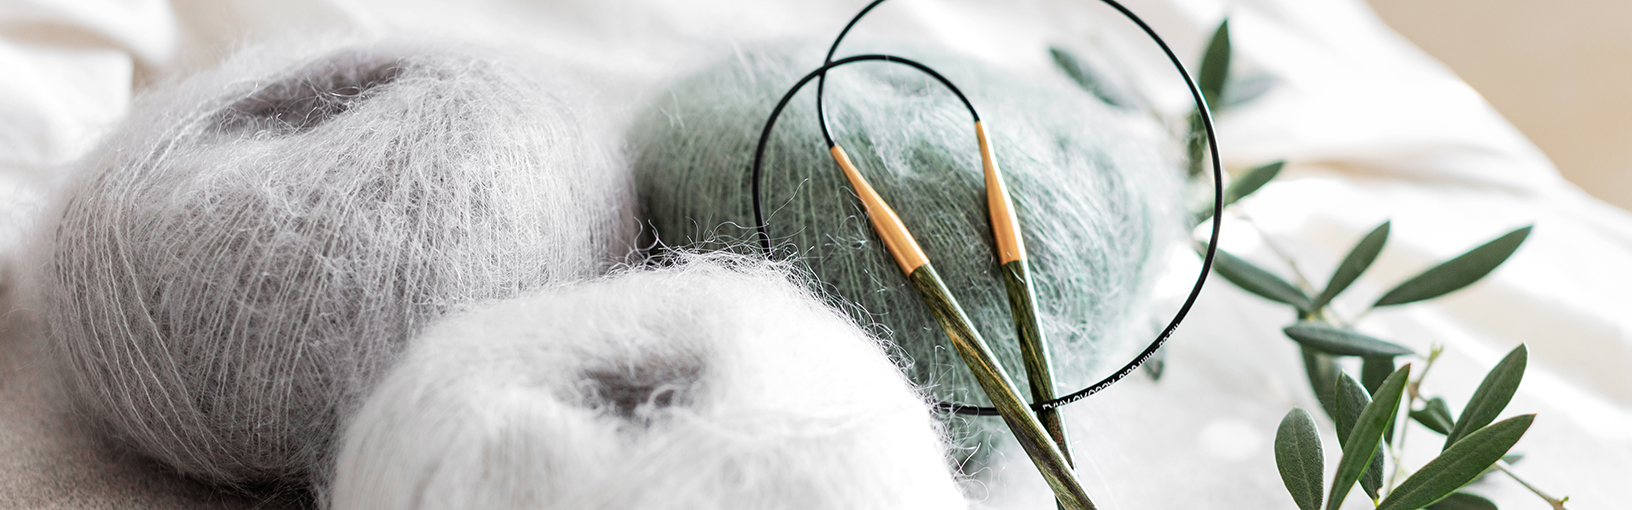 Garn av høy kvalitet til strikking, hekling og toving LANA GROSSA<br> ull & garn | Sokkegarn